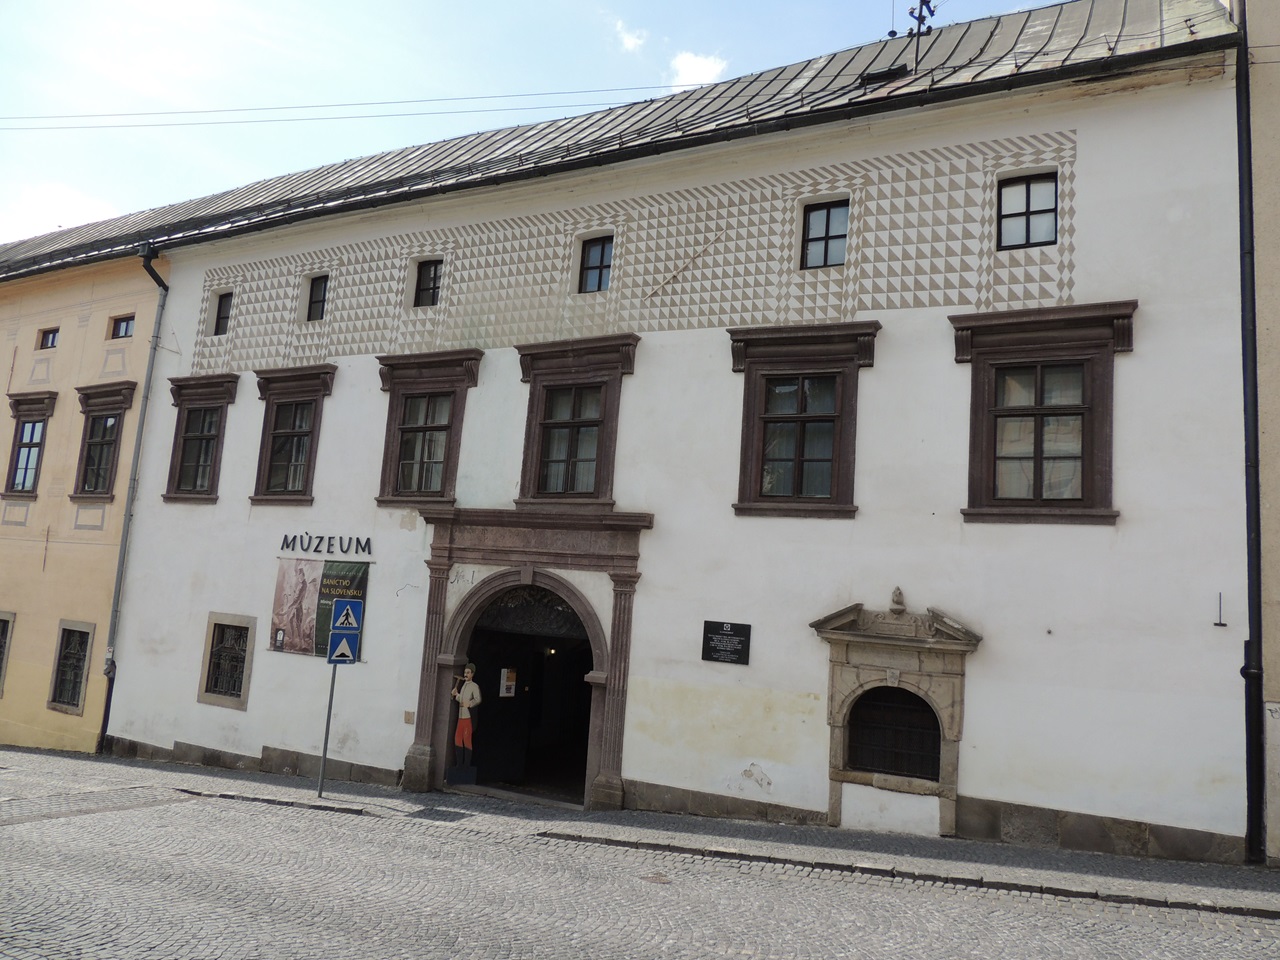 Slovenské banské múzeum Banská Štiavnica